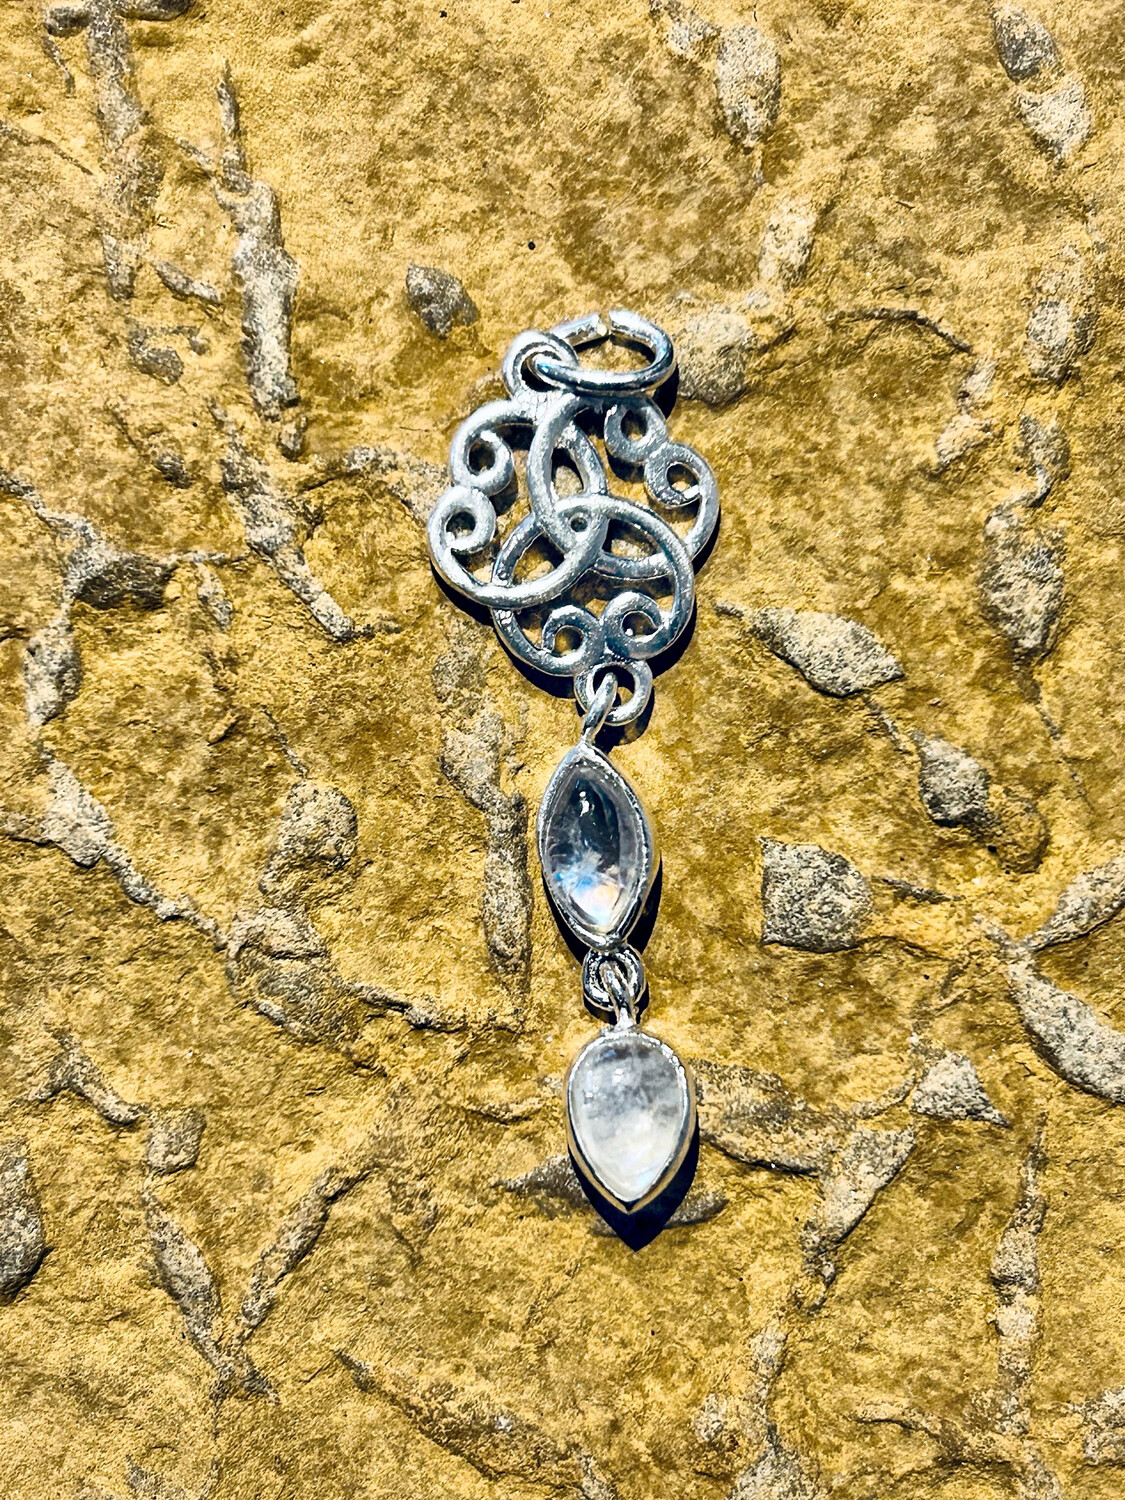 « Série spéciale Orcades » collier en argent informé sur le site sacré Dwarfie stane pierre des géants et des nains avec cristal de roche et noeud celtique no 37